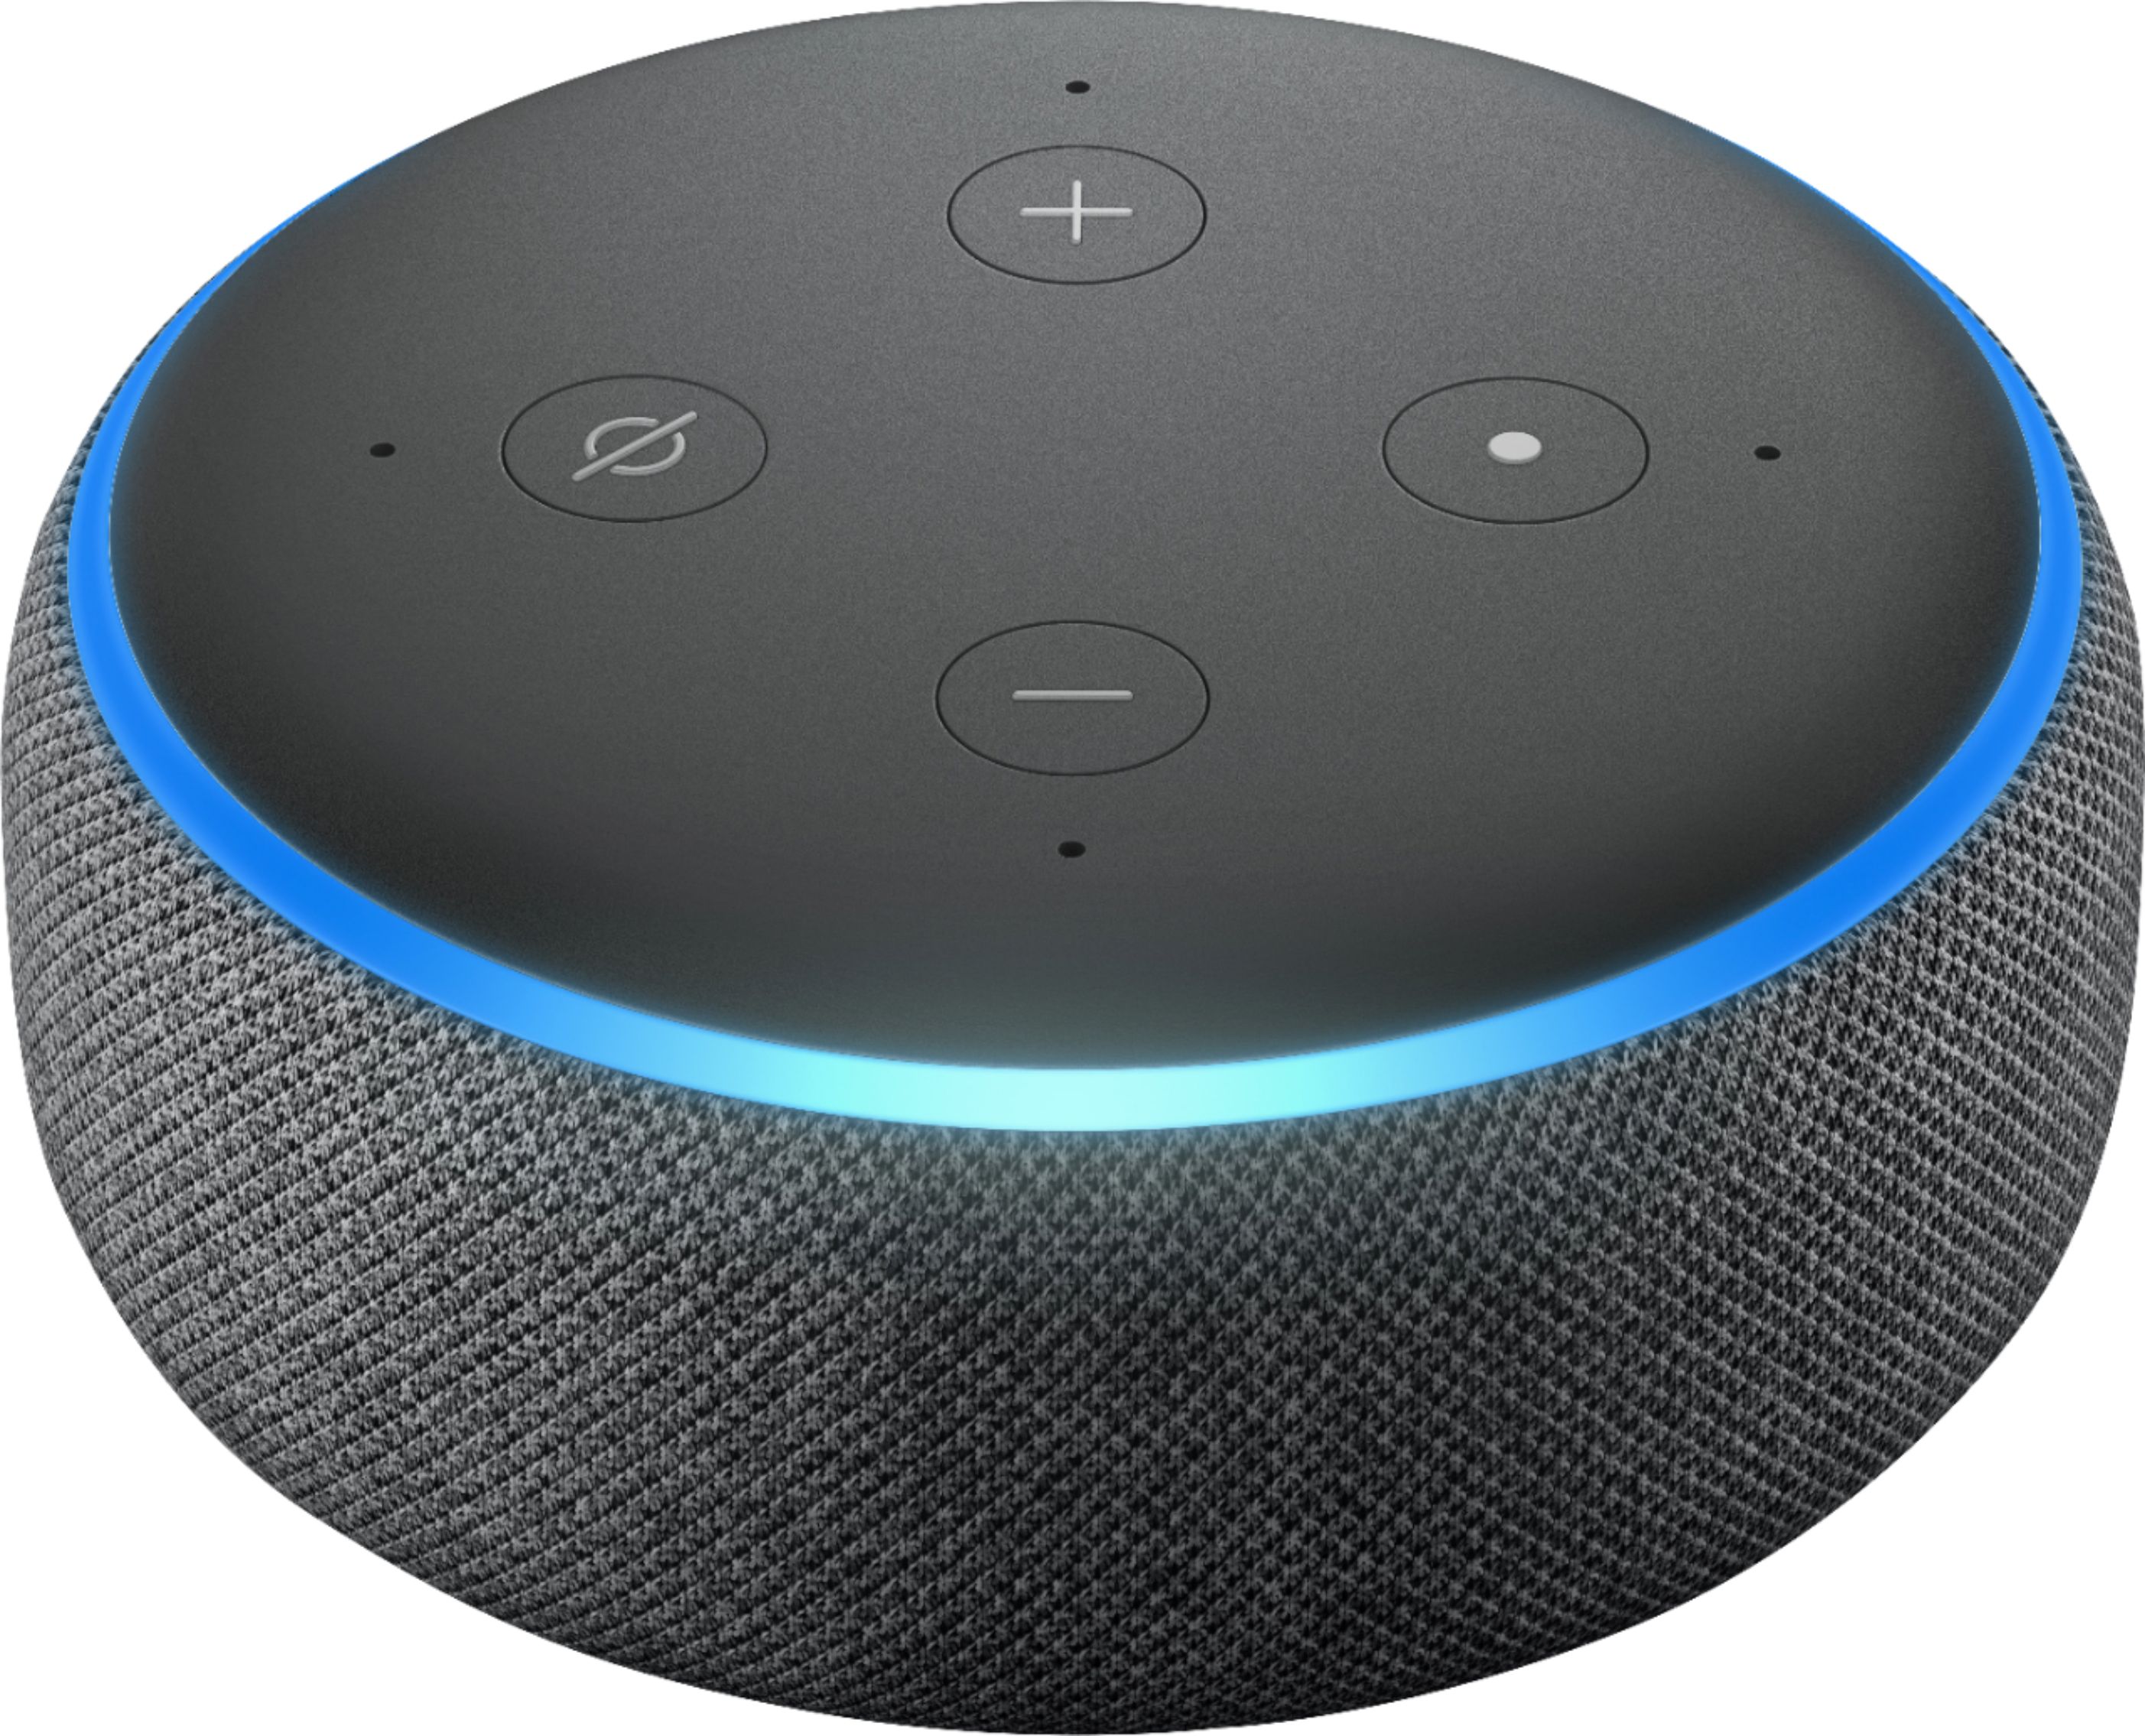 Amazon Echo Dot (3rd Gen) Smart Speaker with Alexa Charcoal  B07FZ8S74R/B0792KTHKJ - Best Buy